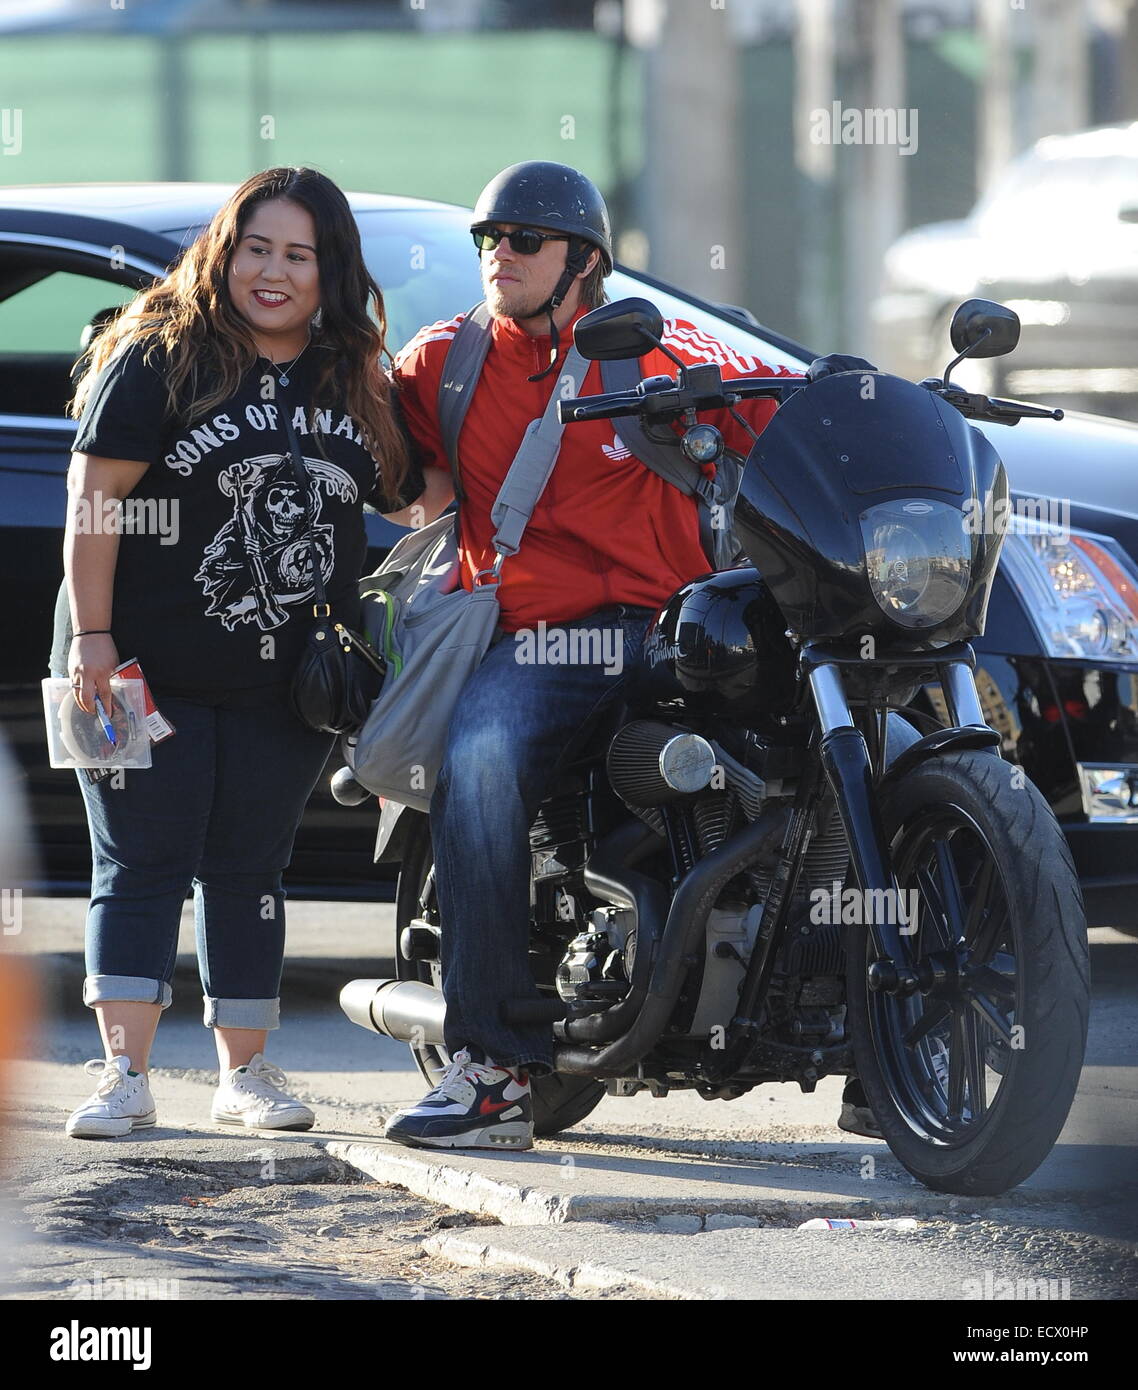 Charlie Hunnam hat Autogramme für die Erwartung von Fans unterschrieben,  als er mit seinem Harley Davidson Motorrad von zu Hause fährt, nachdem er  seine Hit-Show Son's Of Anarchy in der Innenstadt von